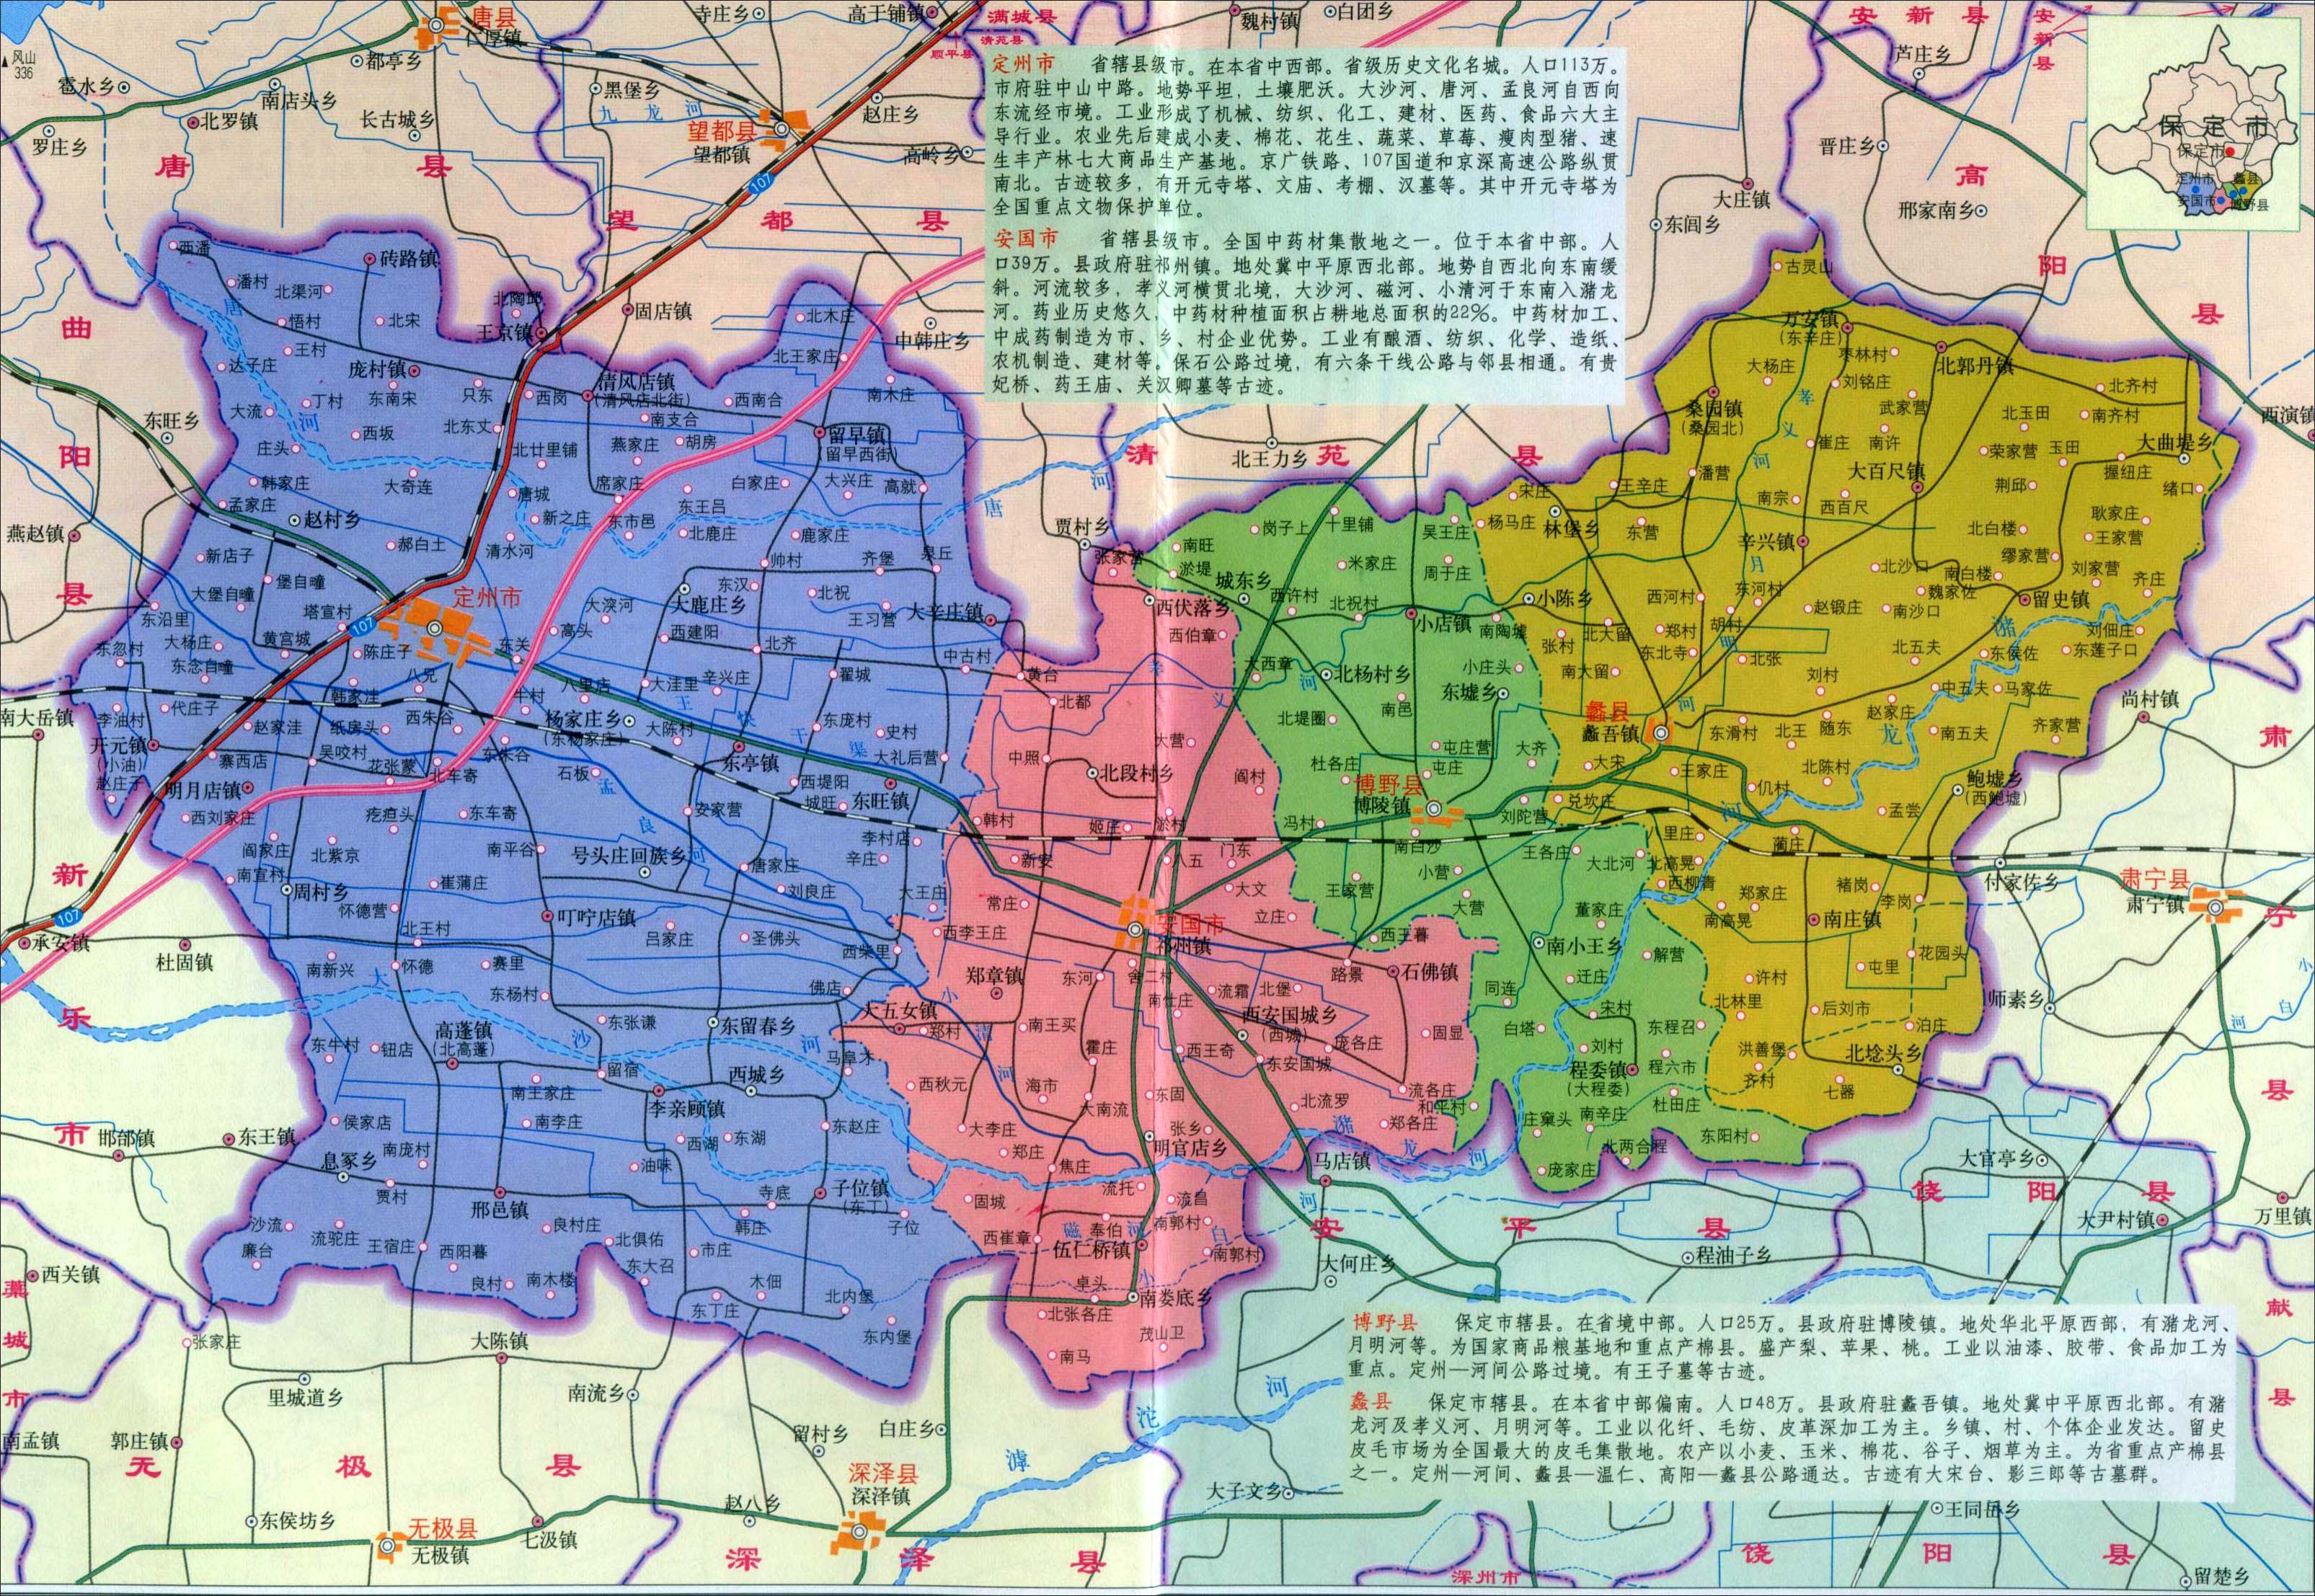 中国地图 河北 保定市 >> 定州市地图 栏目导航: 石家庄  廊坊市